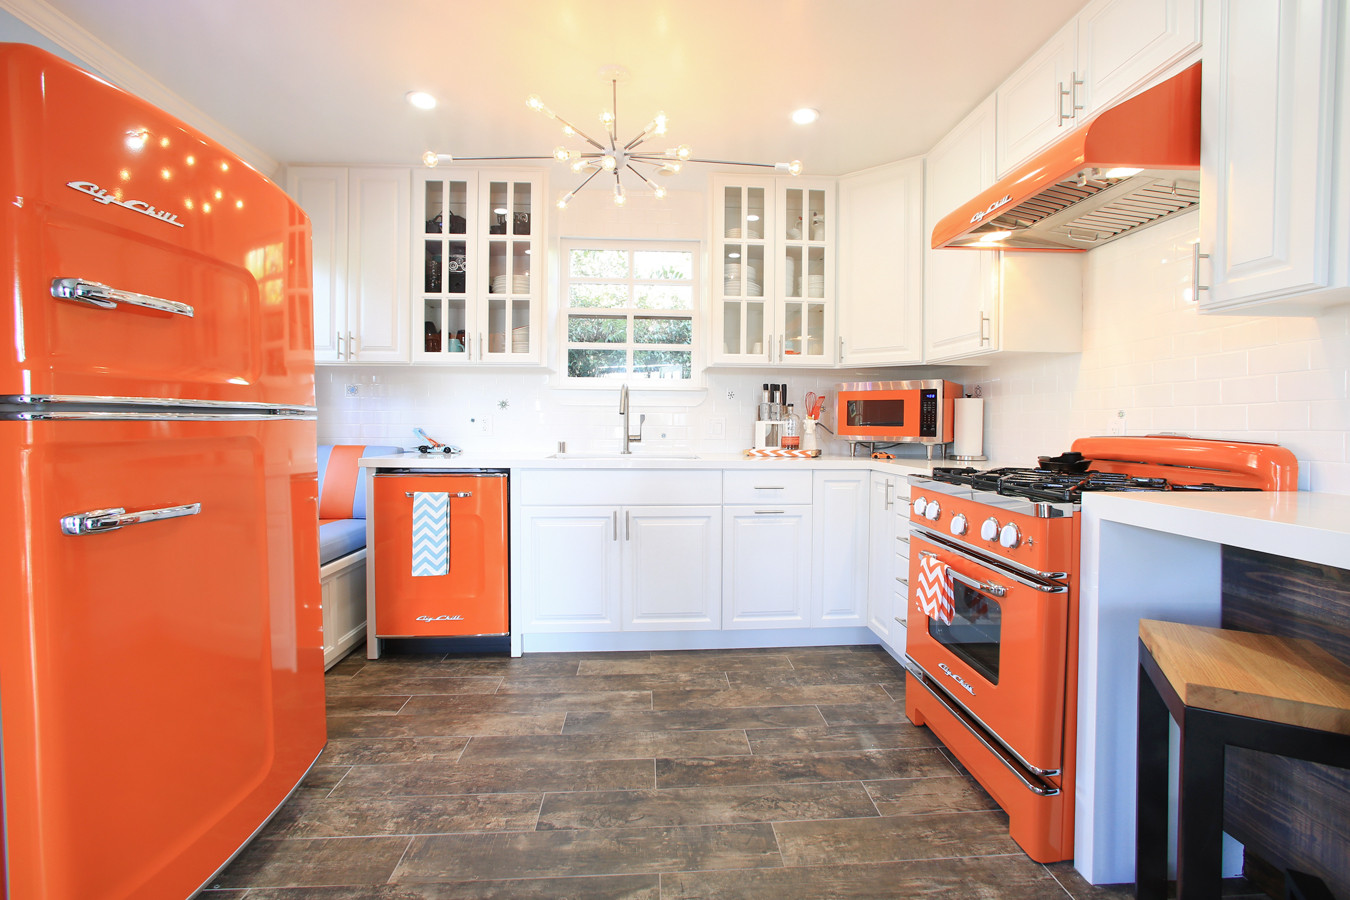 Бытовая техника цвета. Оранжевый холодильник в интерьере кухни. Оранжевая кухня. Оранжевая кухня в интерьере. Кухня с оранжевым холодильником.